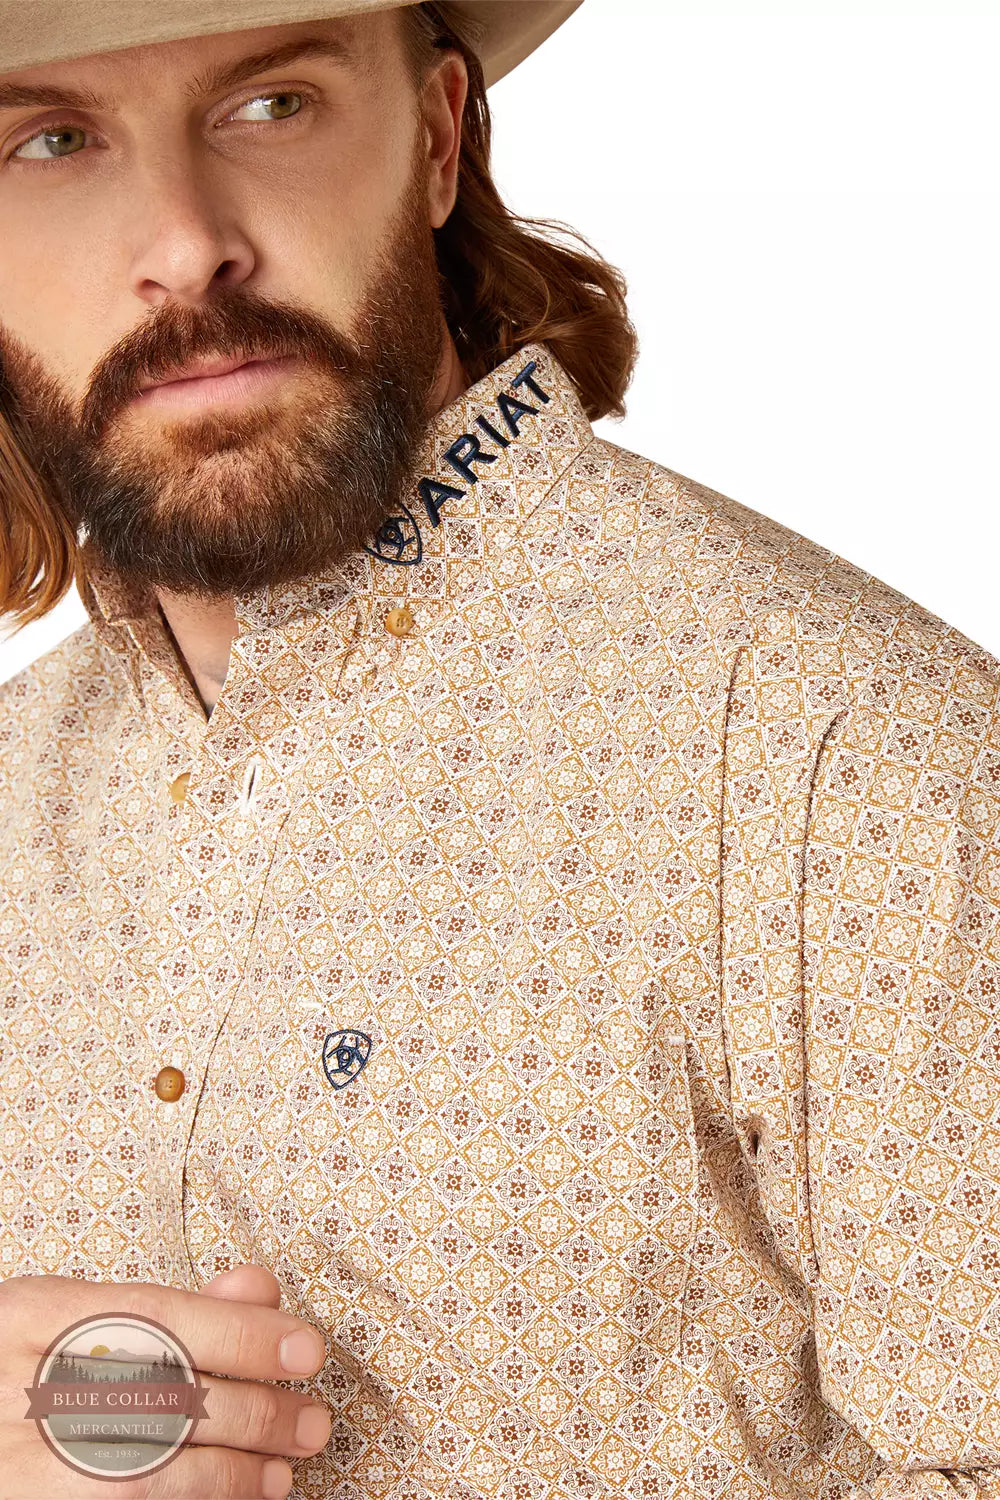 Ariat 10047353 Team Conrad Classic Long Sleeve Shirt in Tan Print Detail View